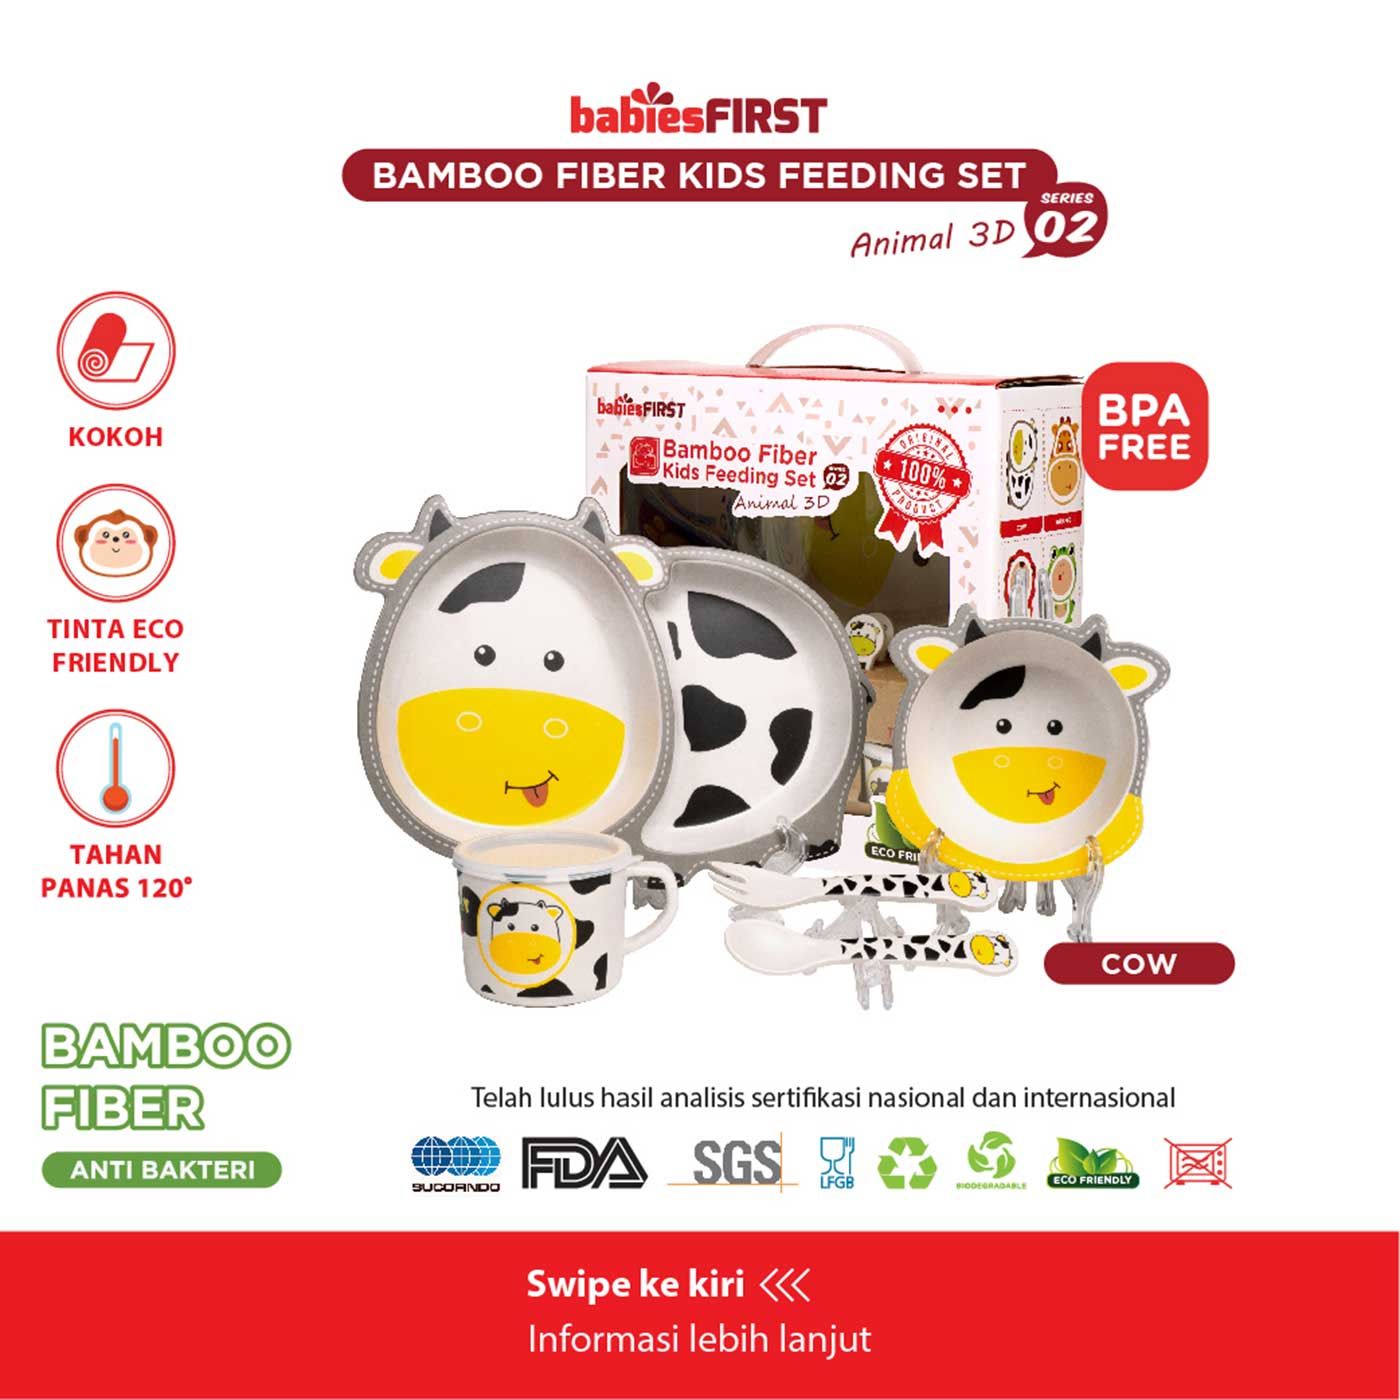 Babiesfirst Bamboo Fiber Kids Feeding Set Animal 3D Cow - 1